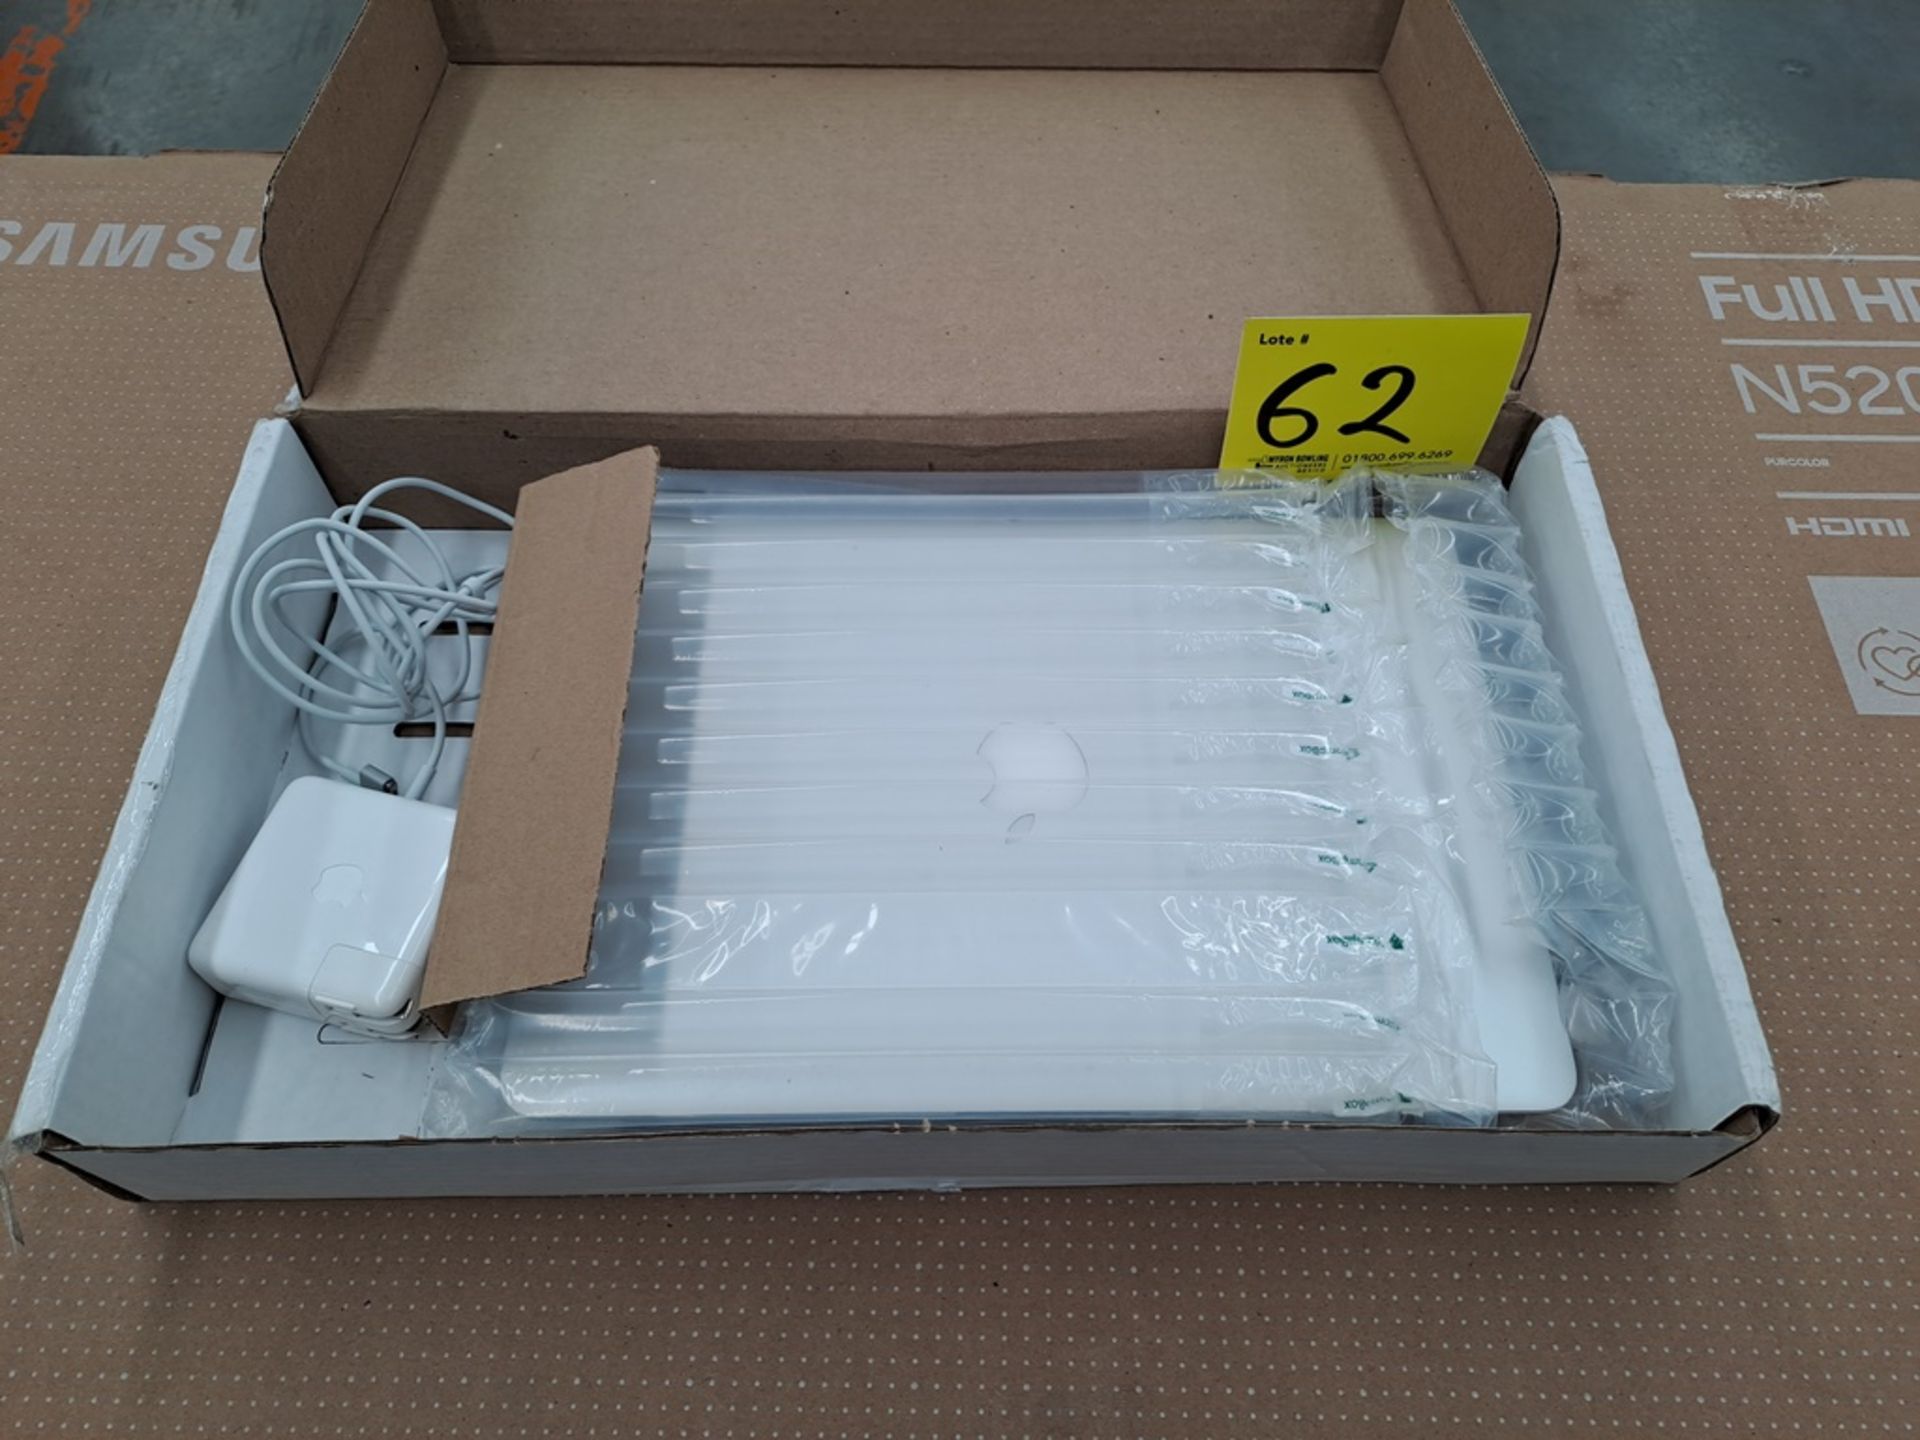 Lote de 1 MacBook Air de 128 GB (No se asegura su funcionamiento, favor de inspeccionar) - Image 6 of 8